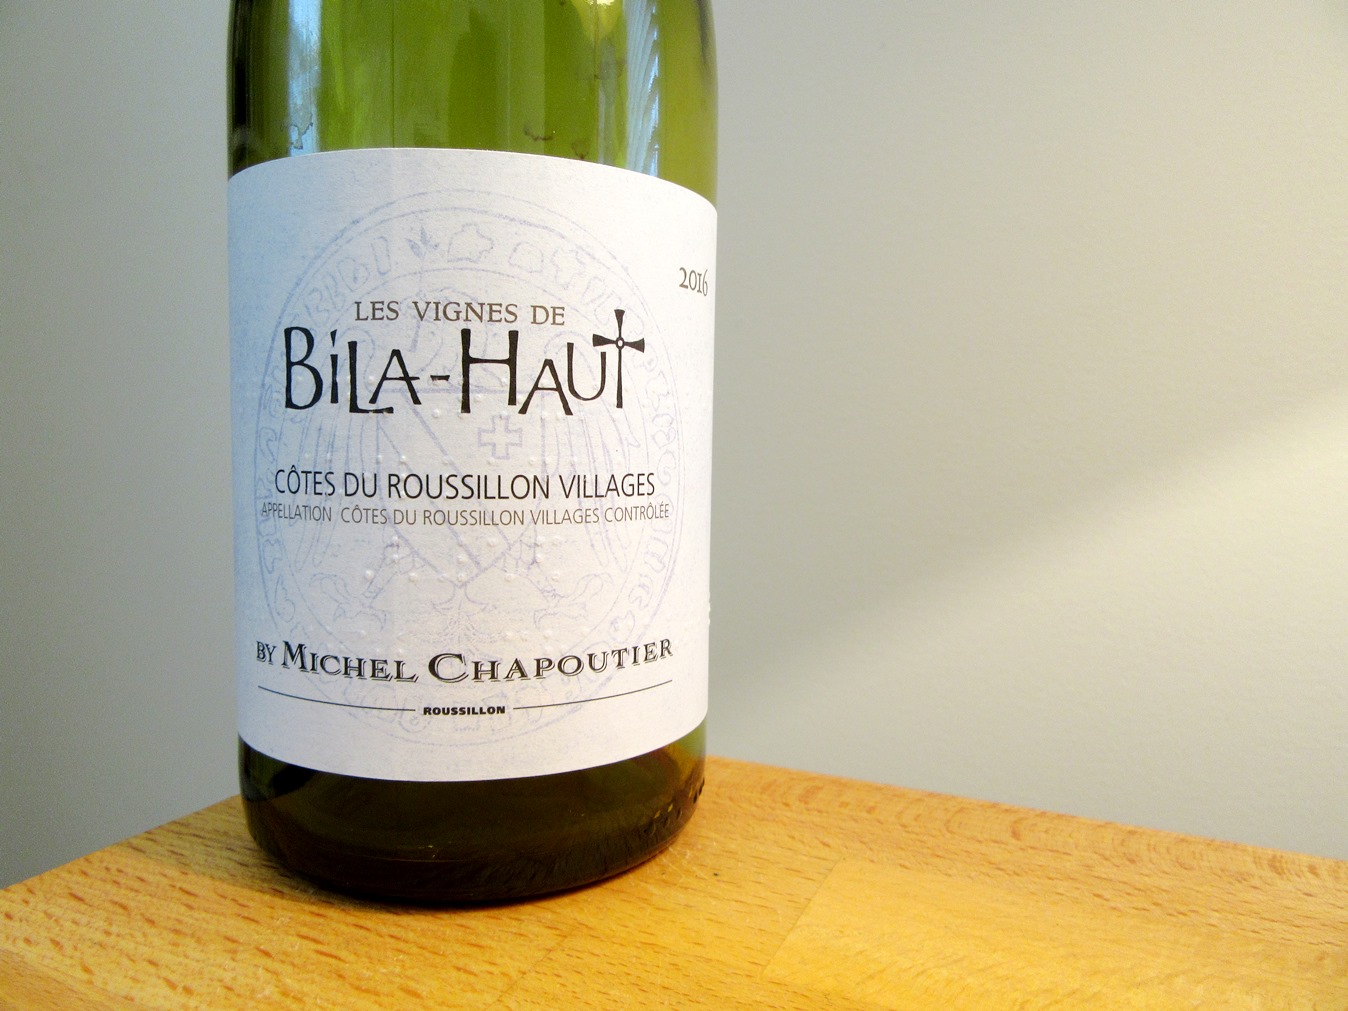 Michel Chapoutier, Les Vignes de Bila-Haut 2016, Cotes du Roussillon, France, Wine Casual